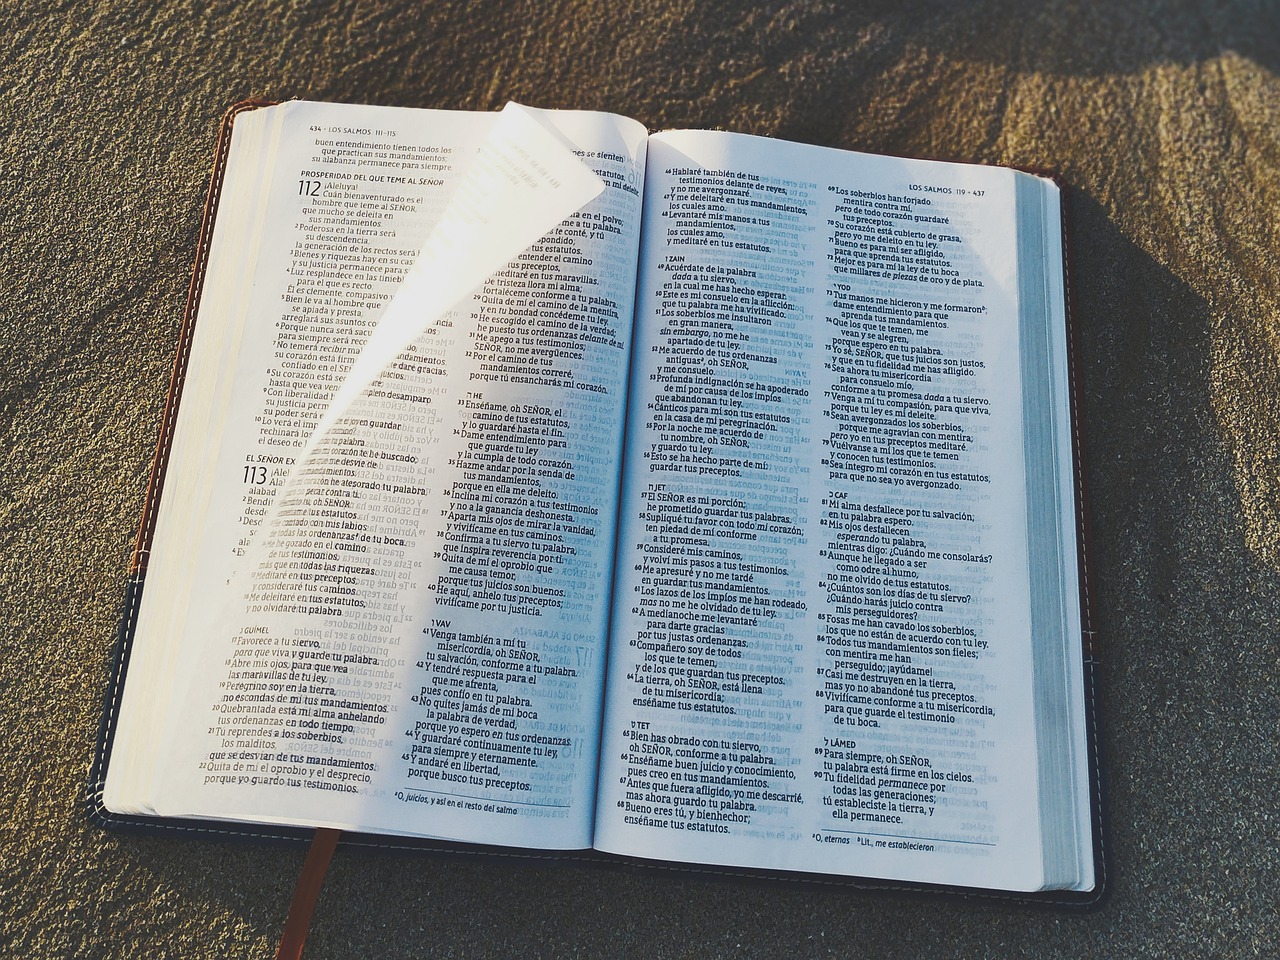 圣经, 读取, 为了学习, 诗篇, 智慧, 神圣的话语, 谚语, 打开圣经